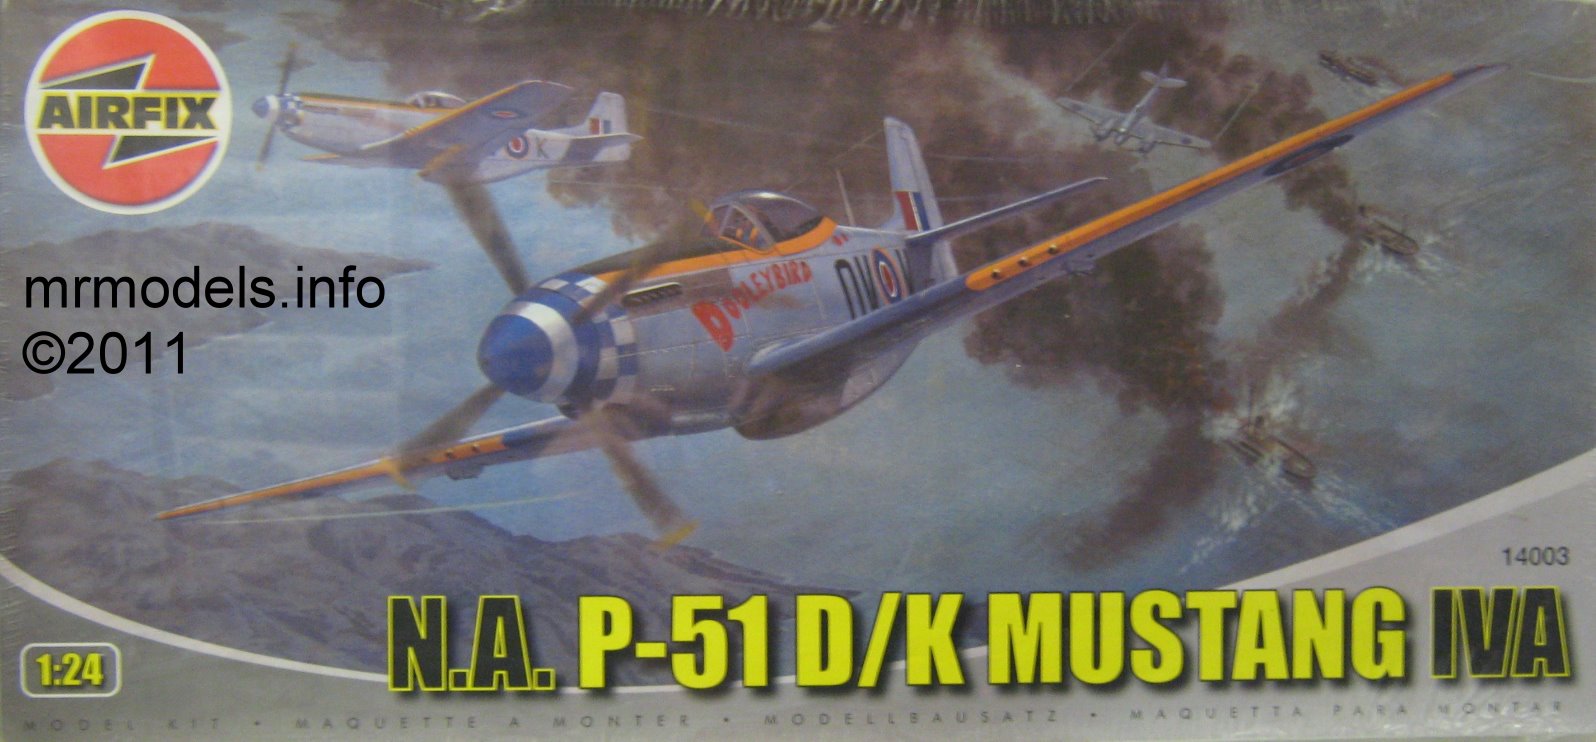 N.A. Mustang P-51 RAF